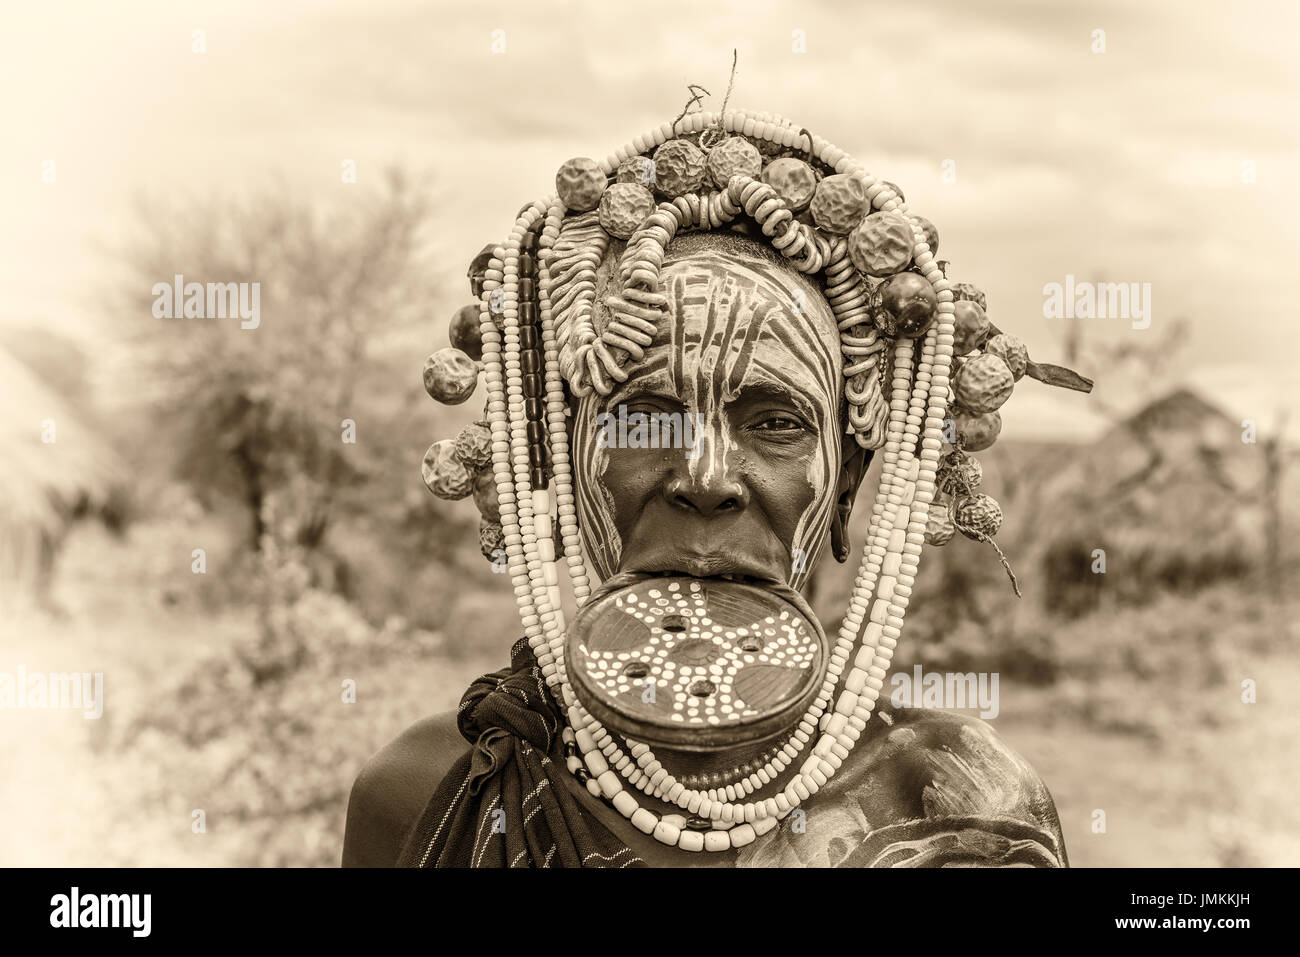 Femme de la tribu africaine Mursi avec grande plaque à lèvre dans son village. Vintage noir et blanc traité. Banque D'Images